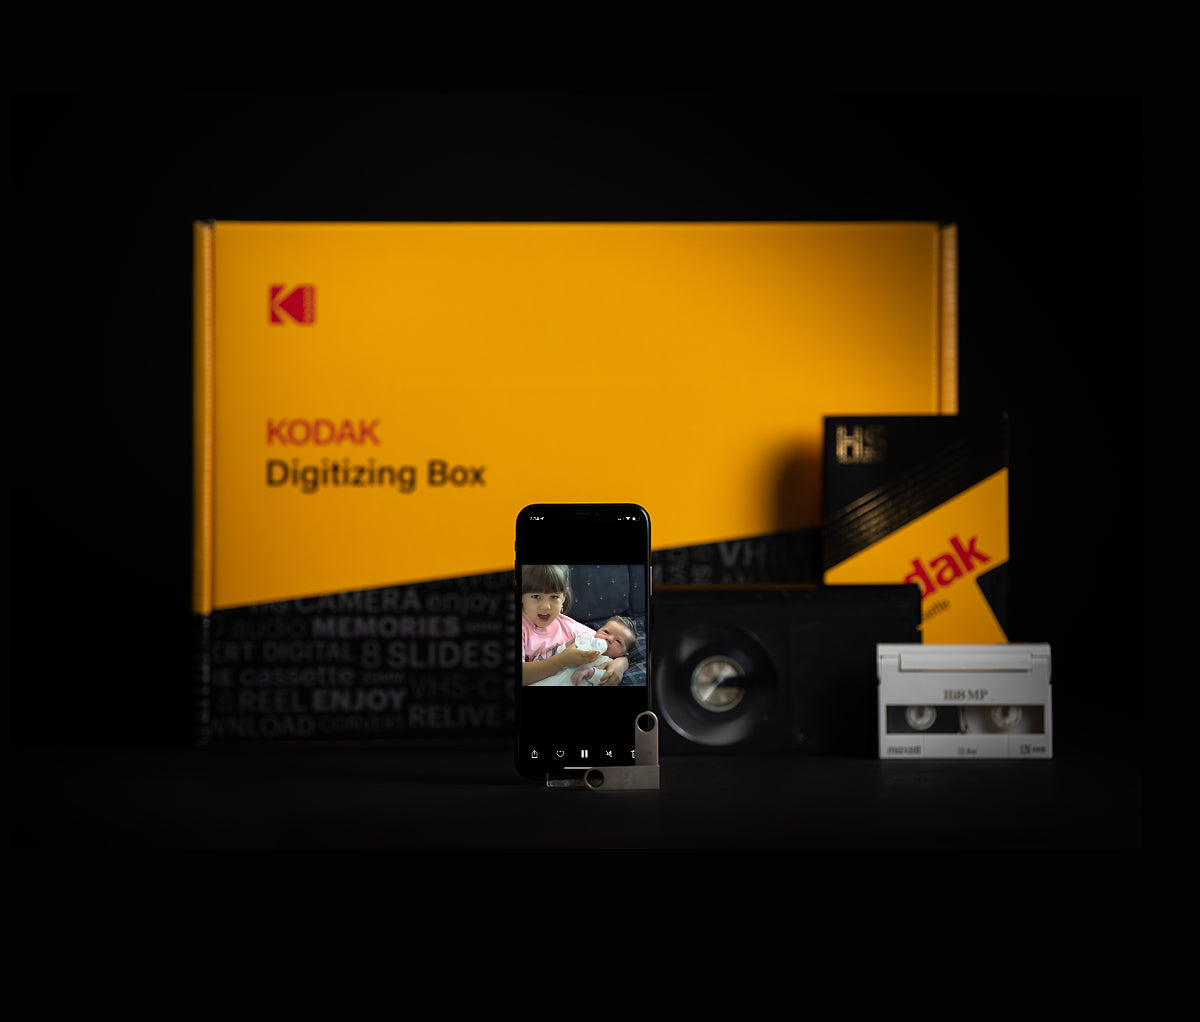 KODAK Digitizing Box – Kodak Digitizing